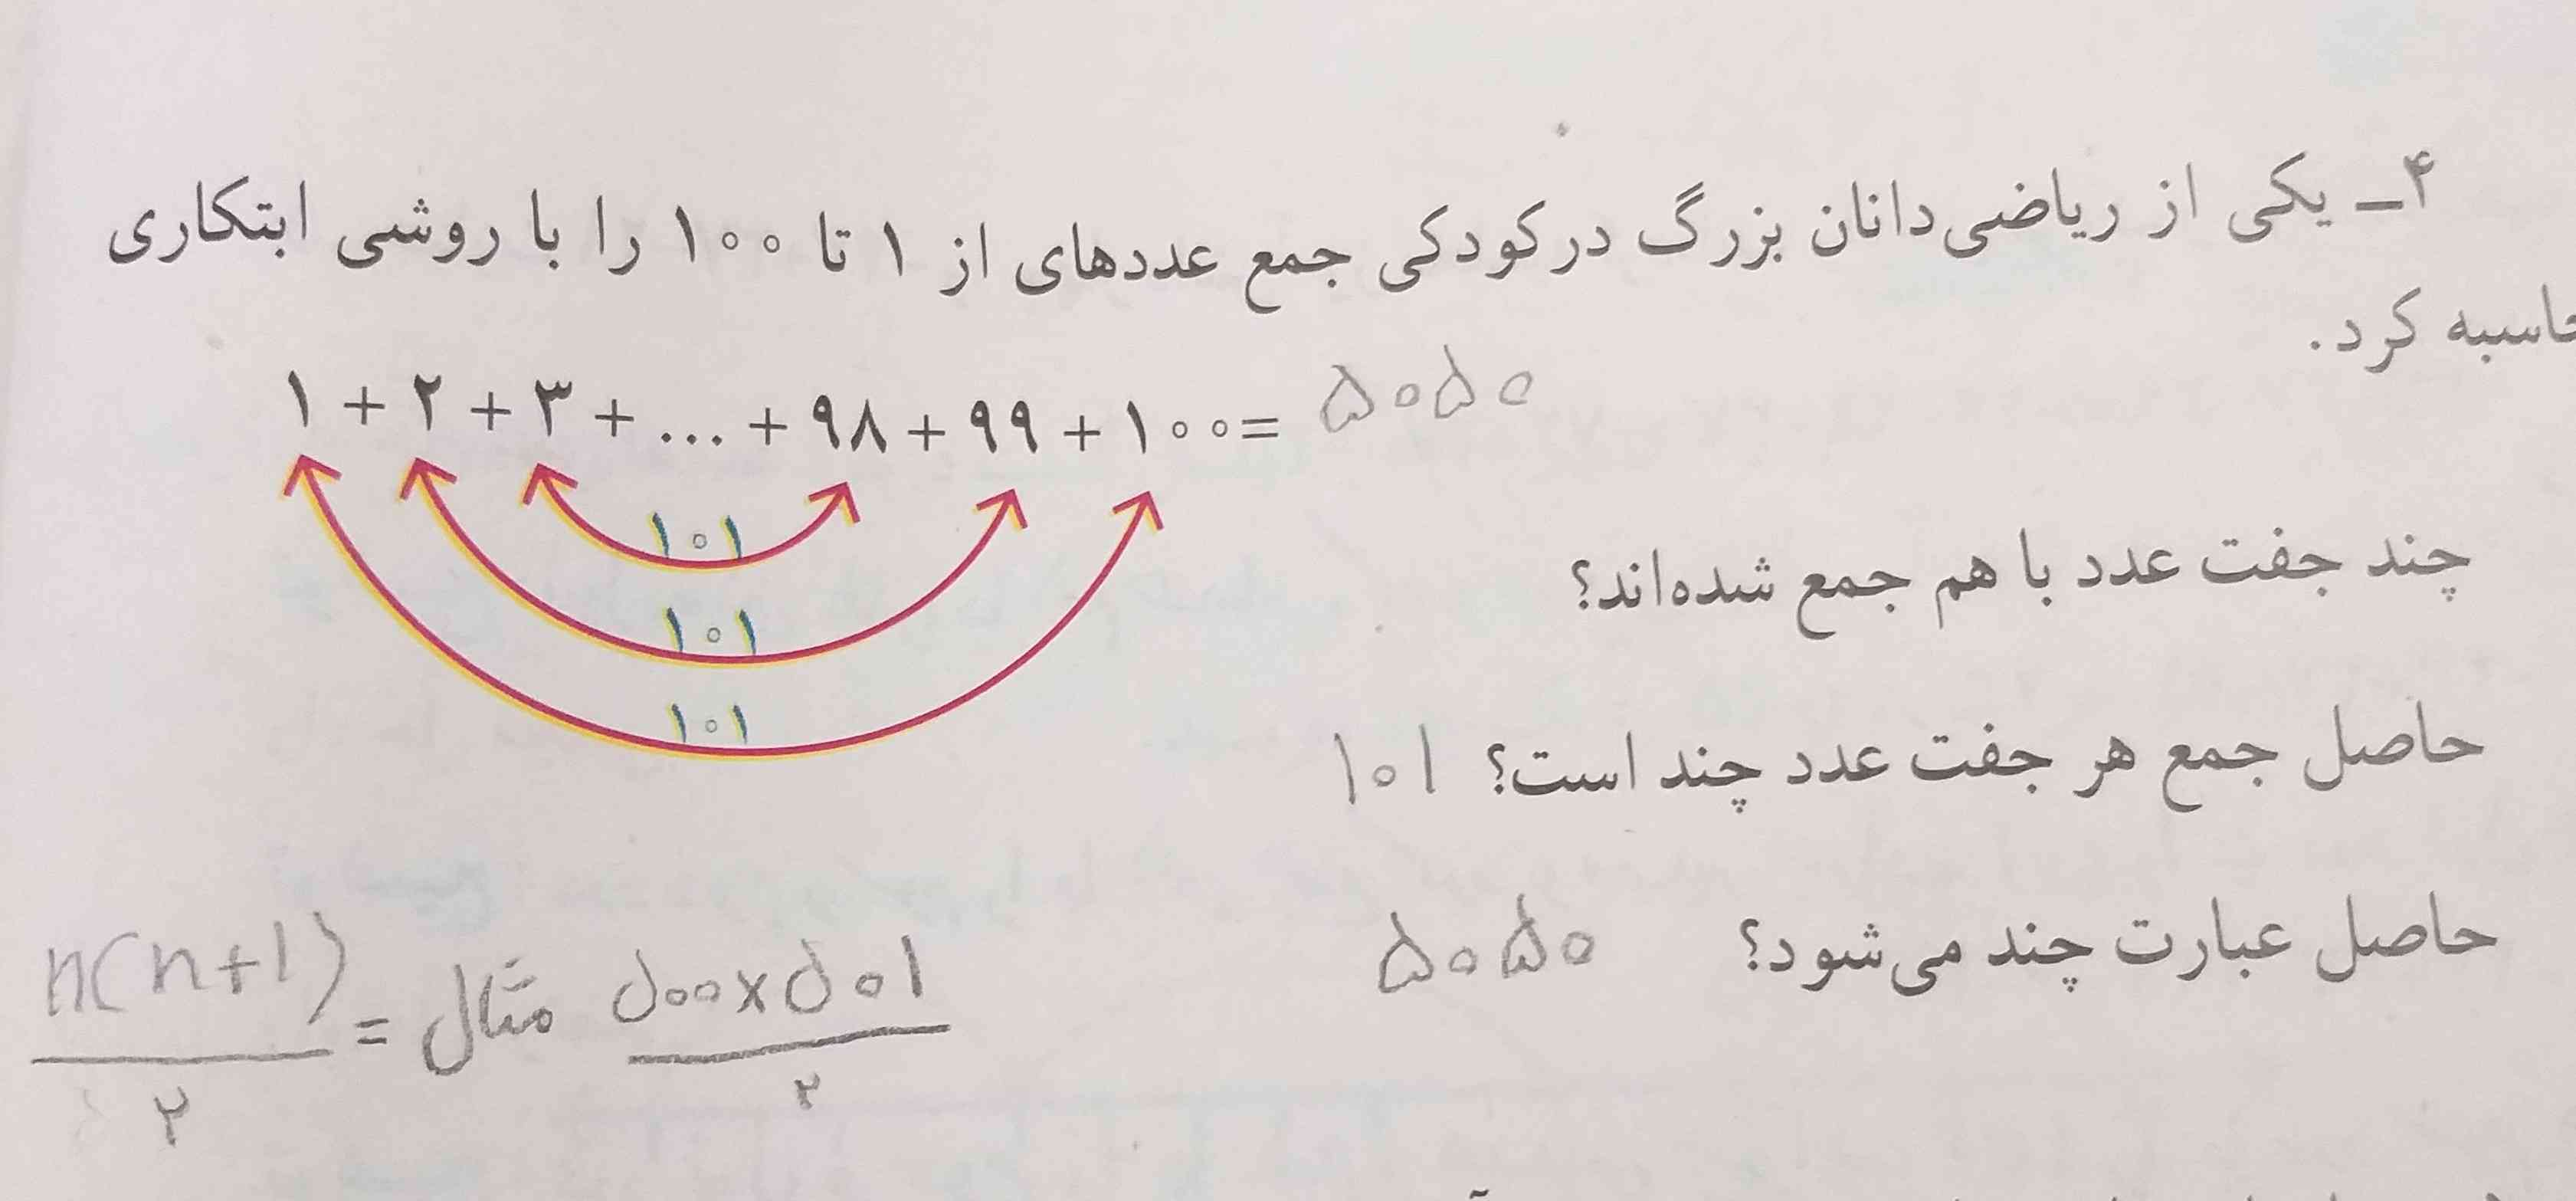 لطفا توضیح کامل بدین این سوال چطوری حل شده و اگه مثل این سوال تو امتحان بیاد چطوری میشه حل کرد؟تاج میدم